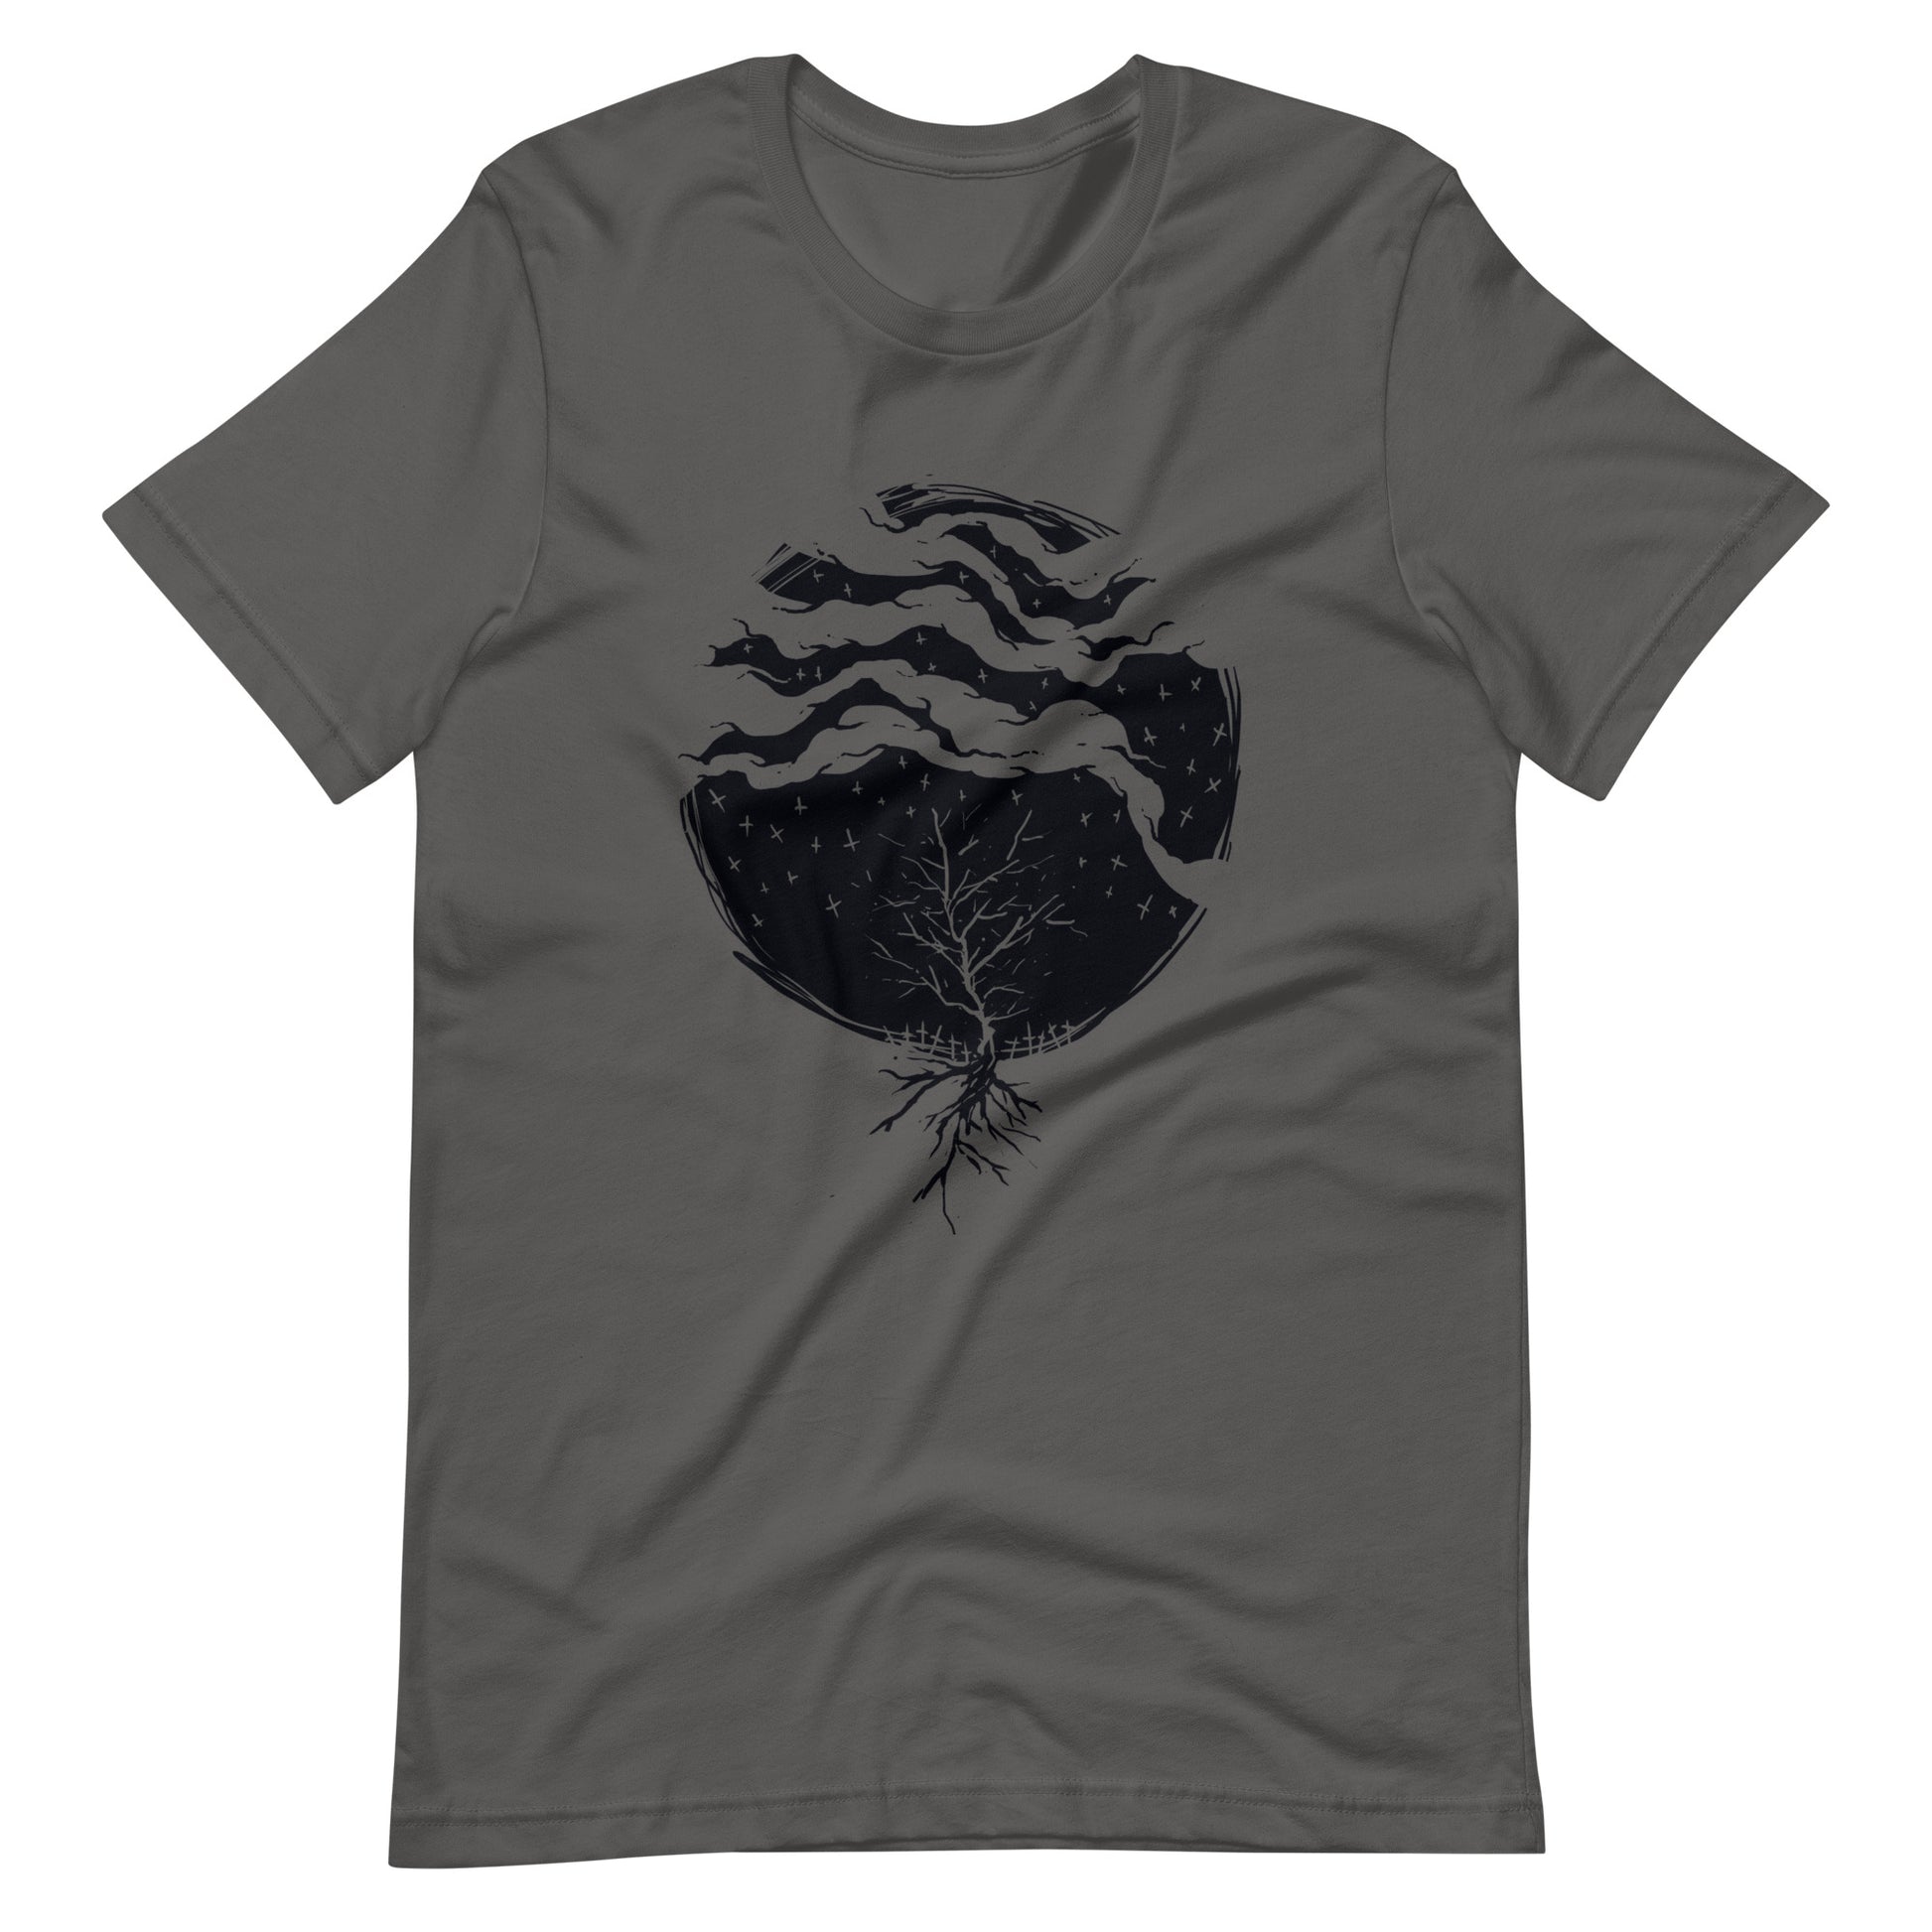 Dead Rain Black - Men's t-shirt - Asphalt Front